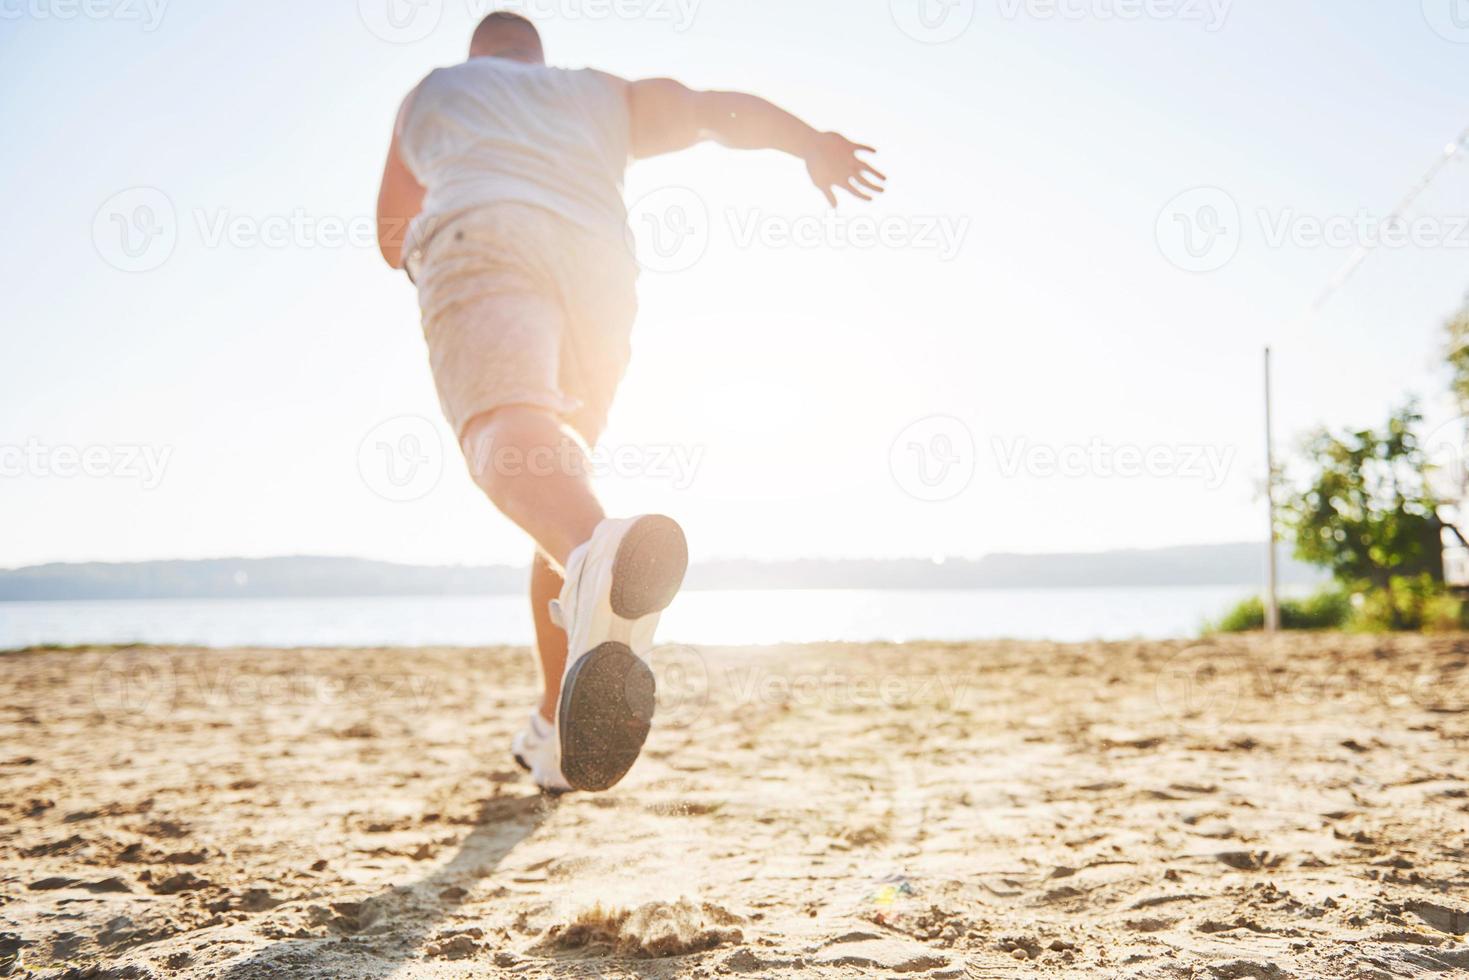 utomhus terränglöpning i sommarsolskoncept för träning, fitness och hälsosam livsstil. närbild av fötterna på en man som kör i gräset foto